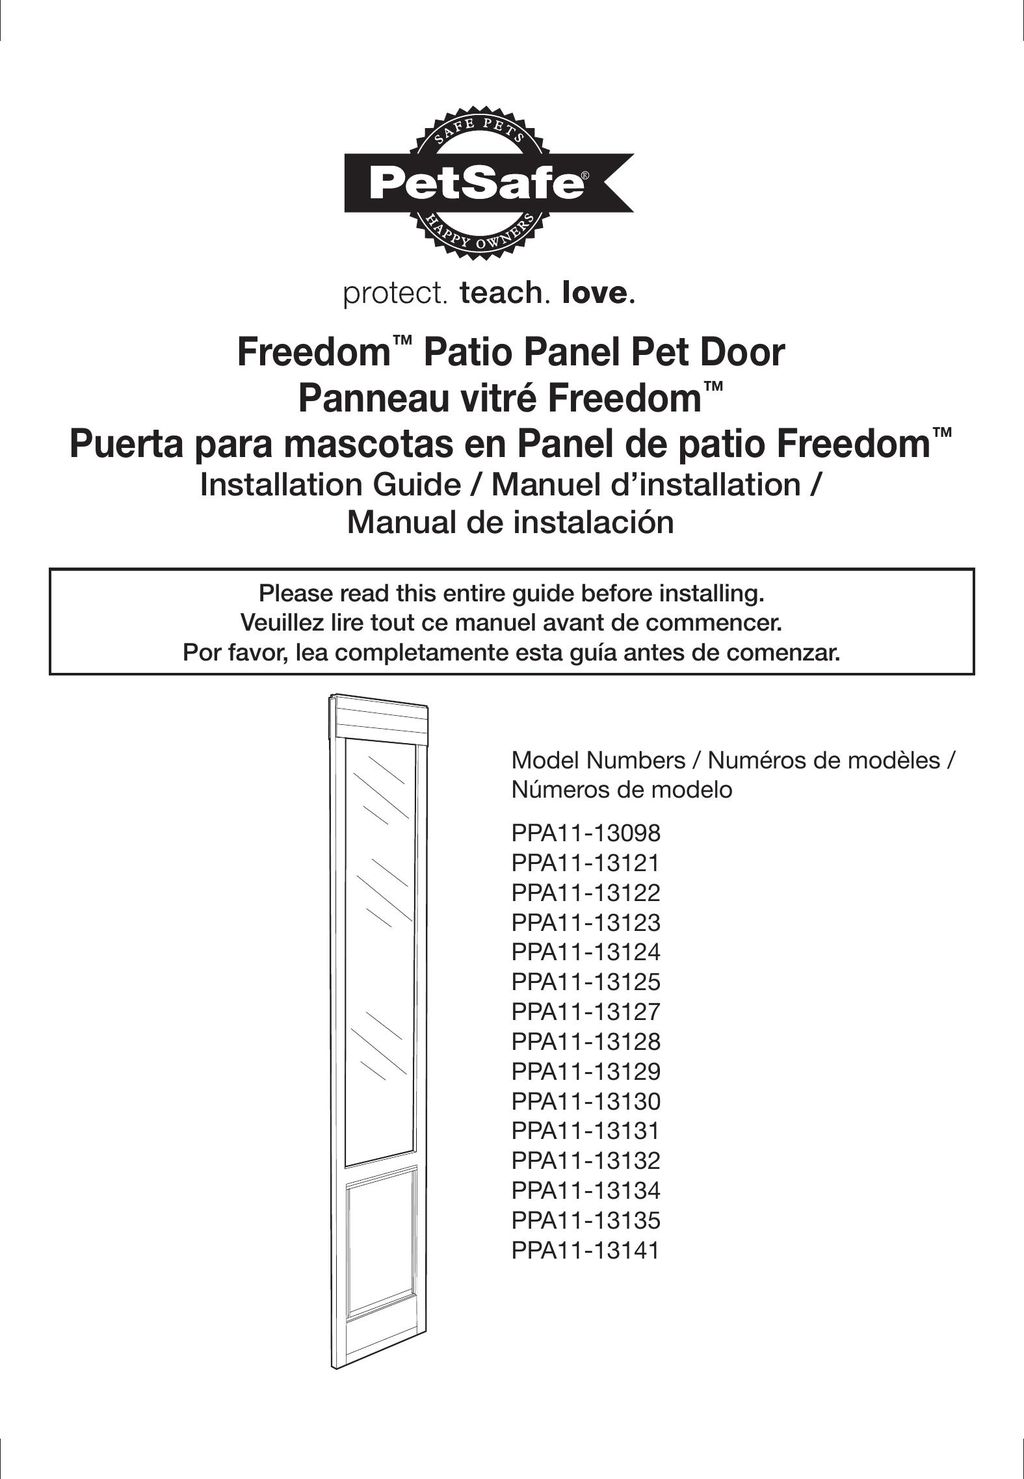 Petsafe PPA11-13129 Door User Manual